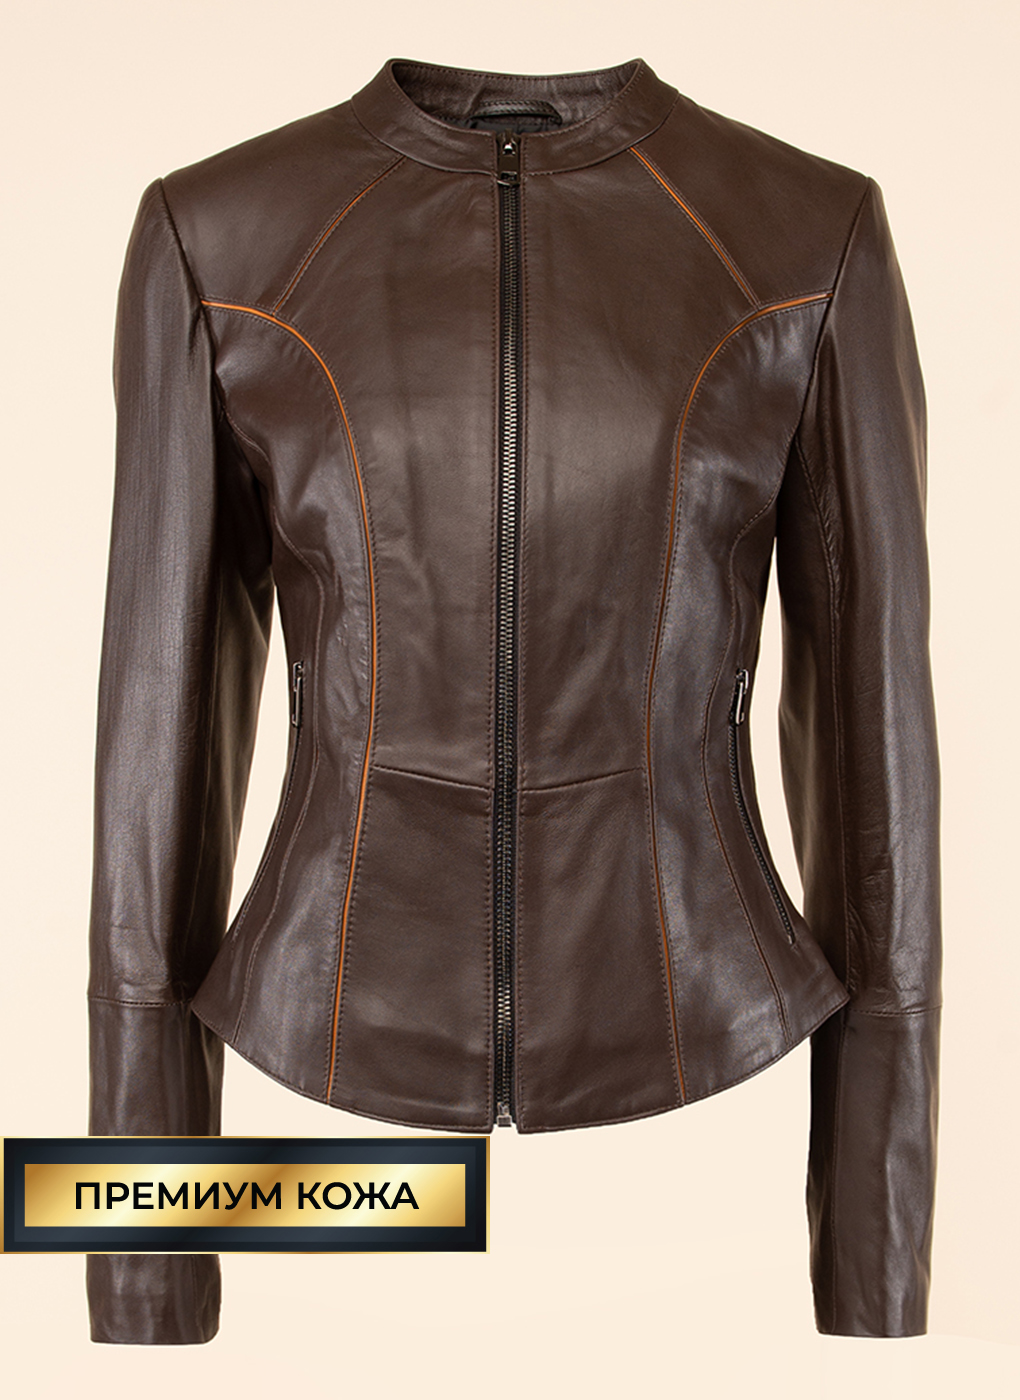 Кожаная куртка женская Каляев 53165 коричневая 50 RU